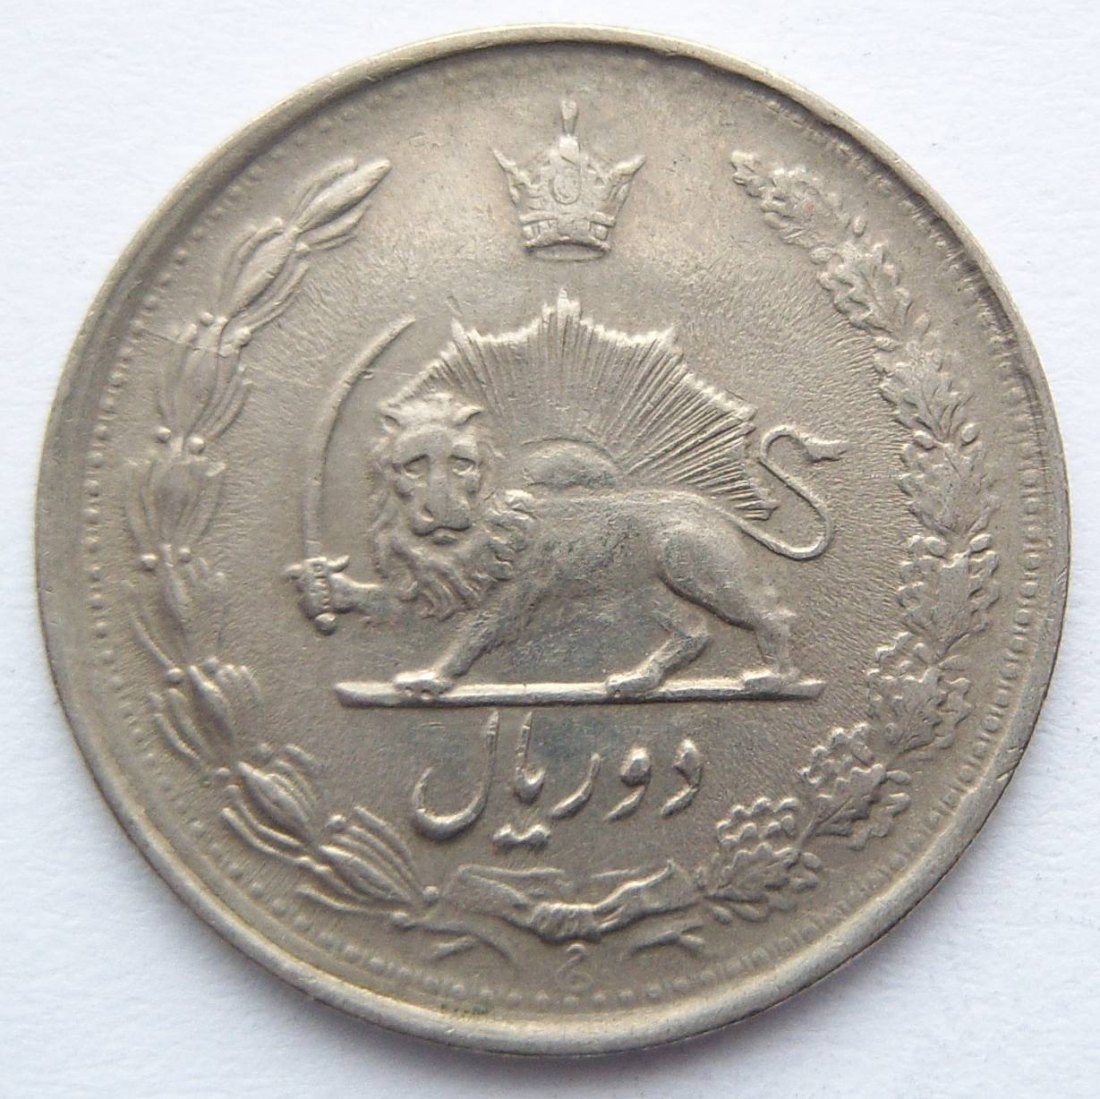  Iran kleine Münze   